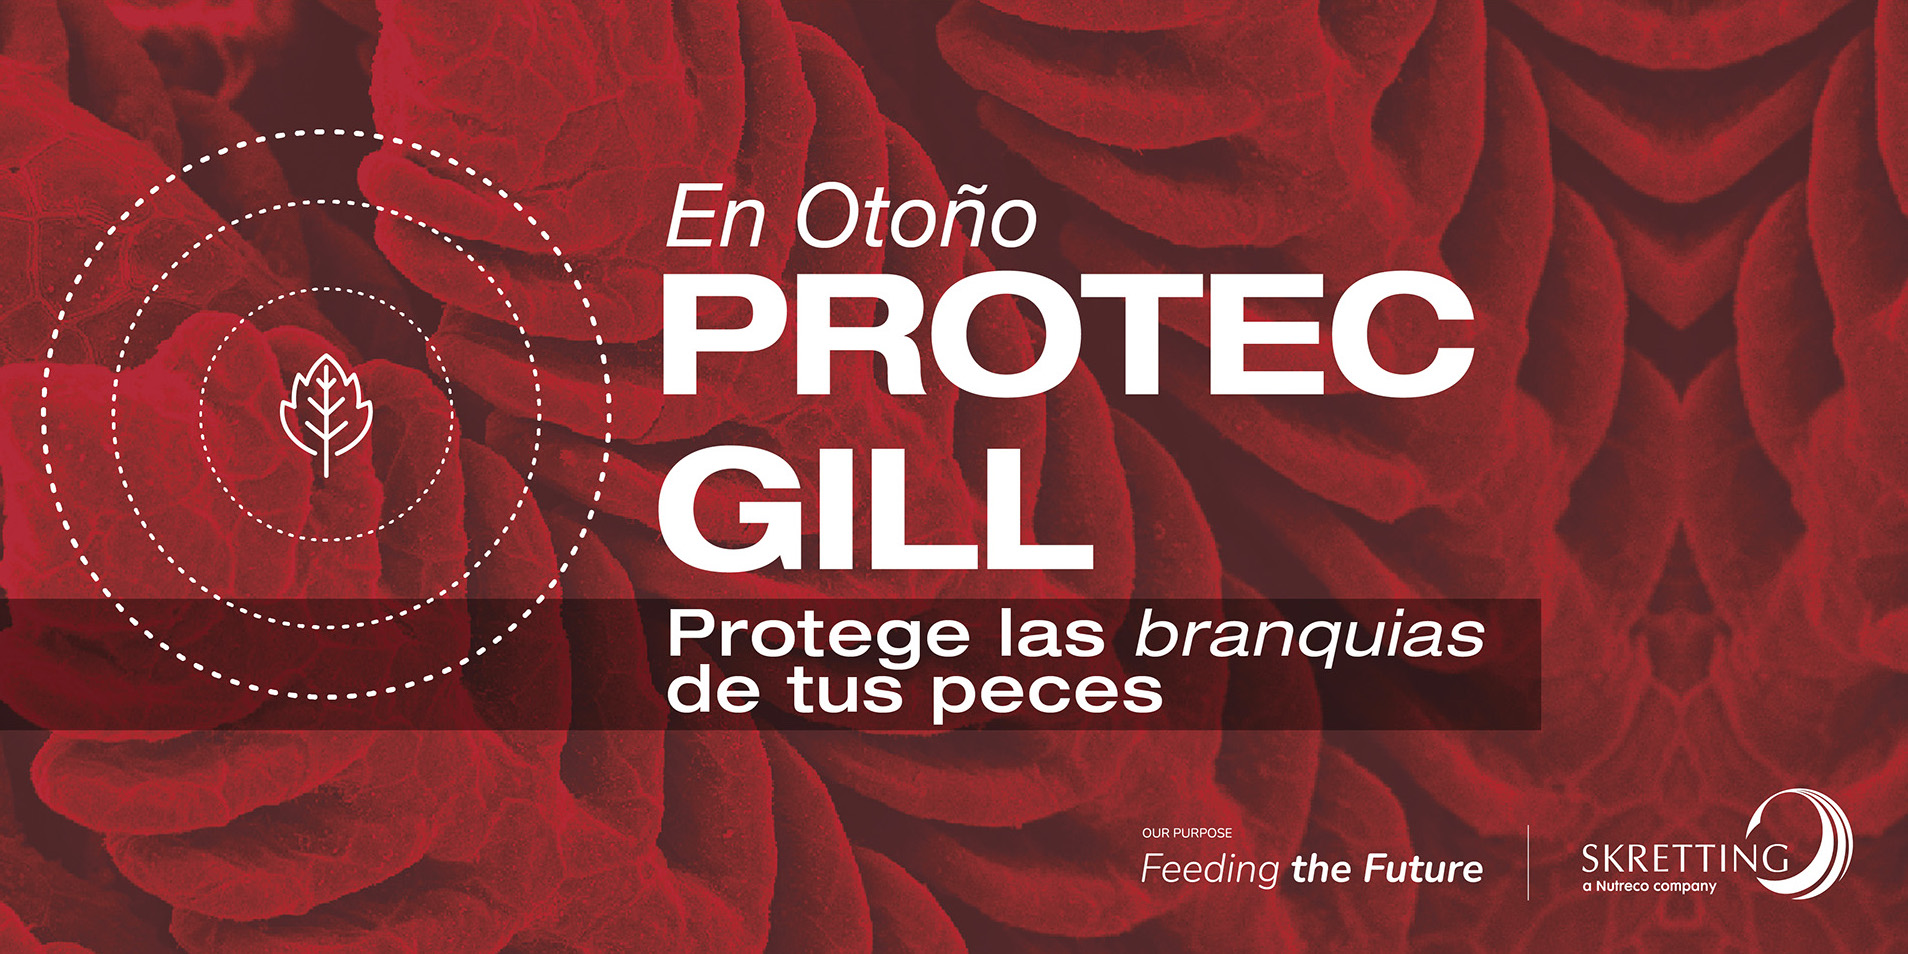 Protec Gill es la única dieta funcional con resultados comprobados contra el daño branquial